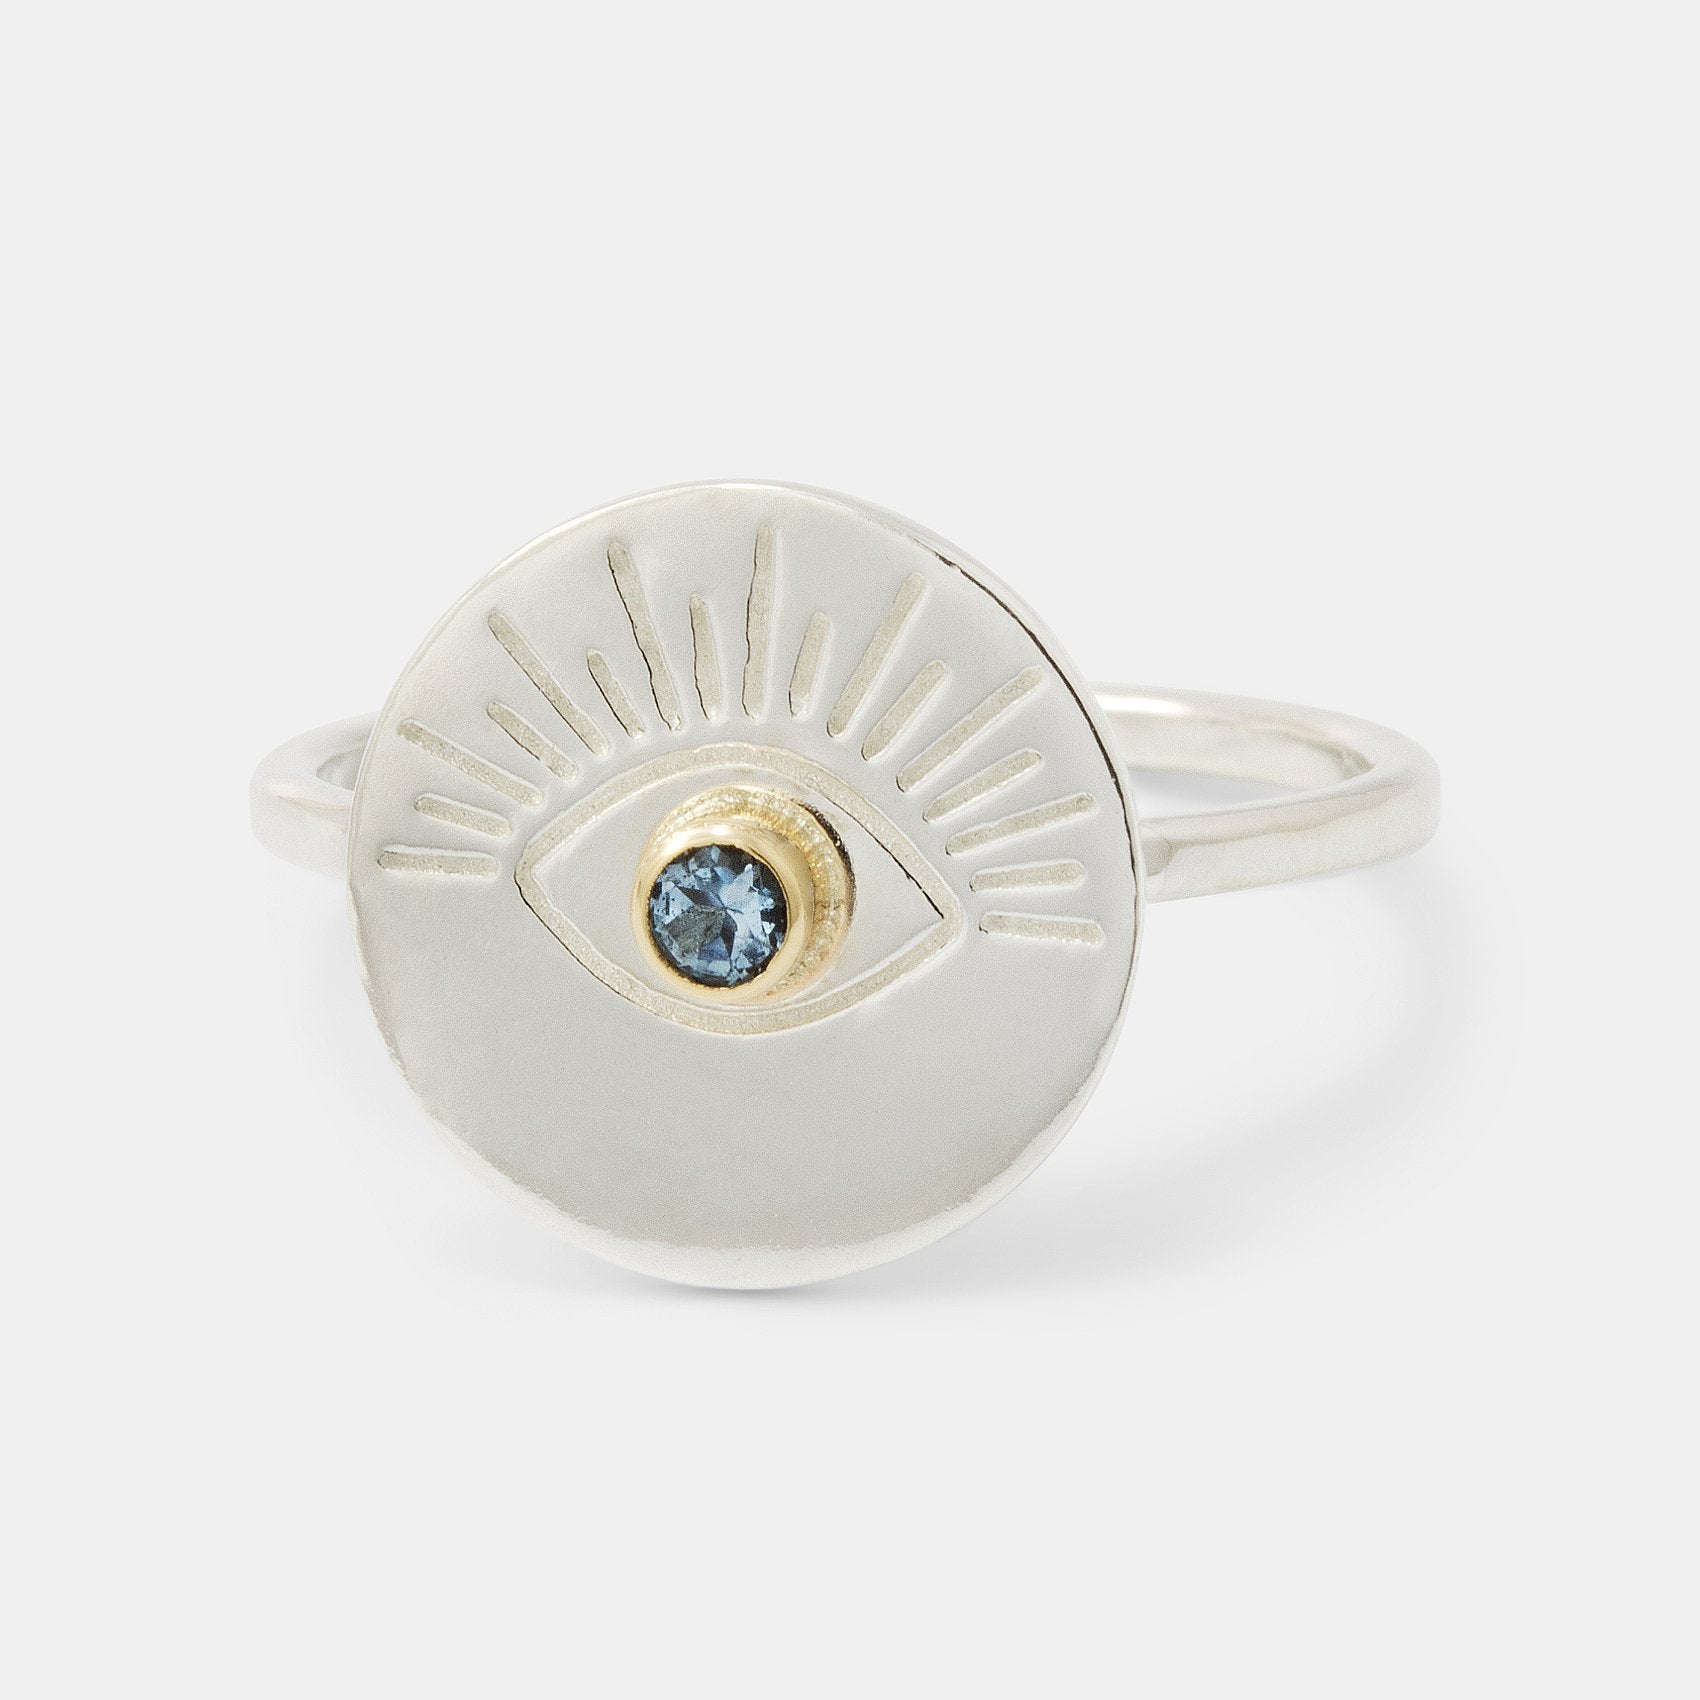 Eye & aquamarine amulet ring - Simone Walsh Jewellery Australia